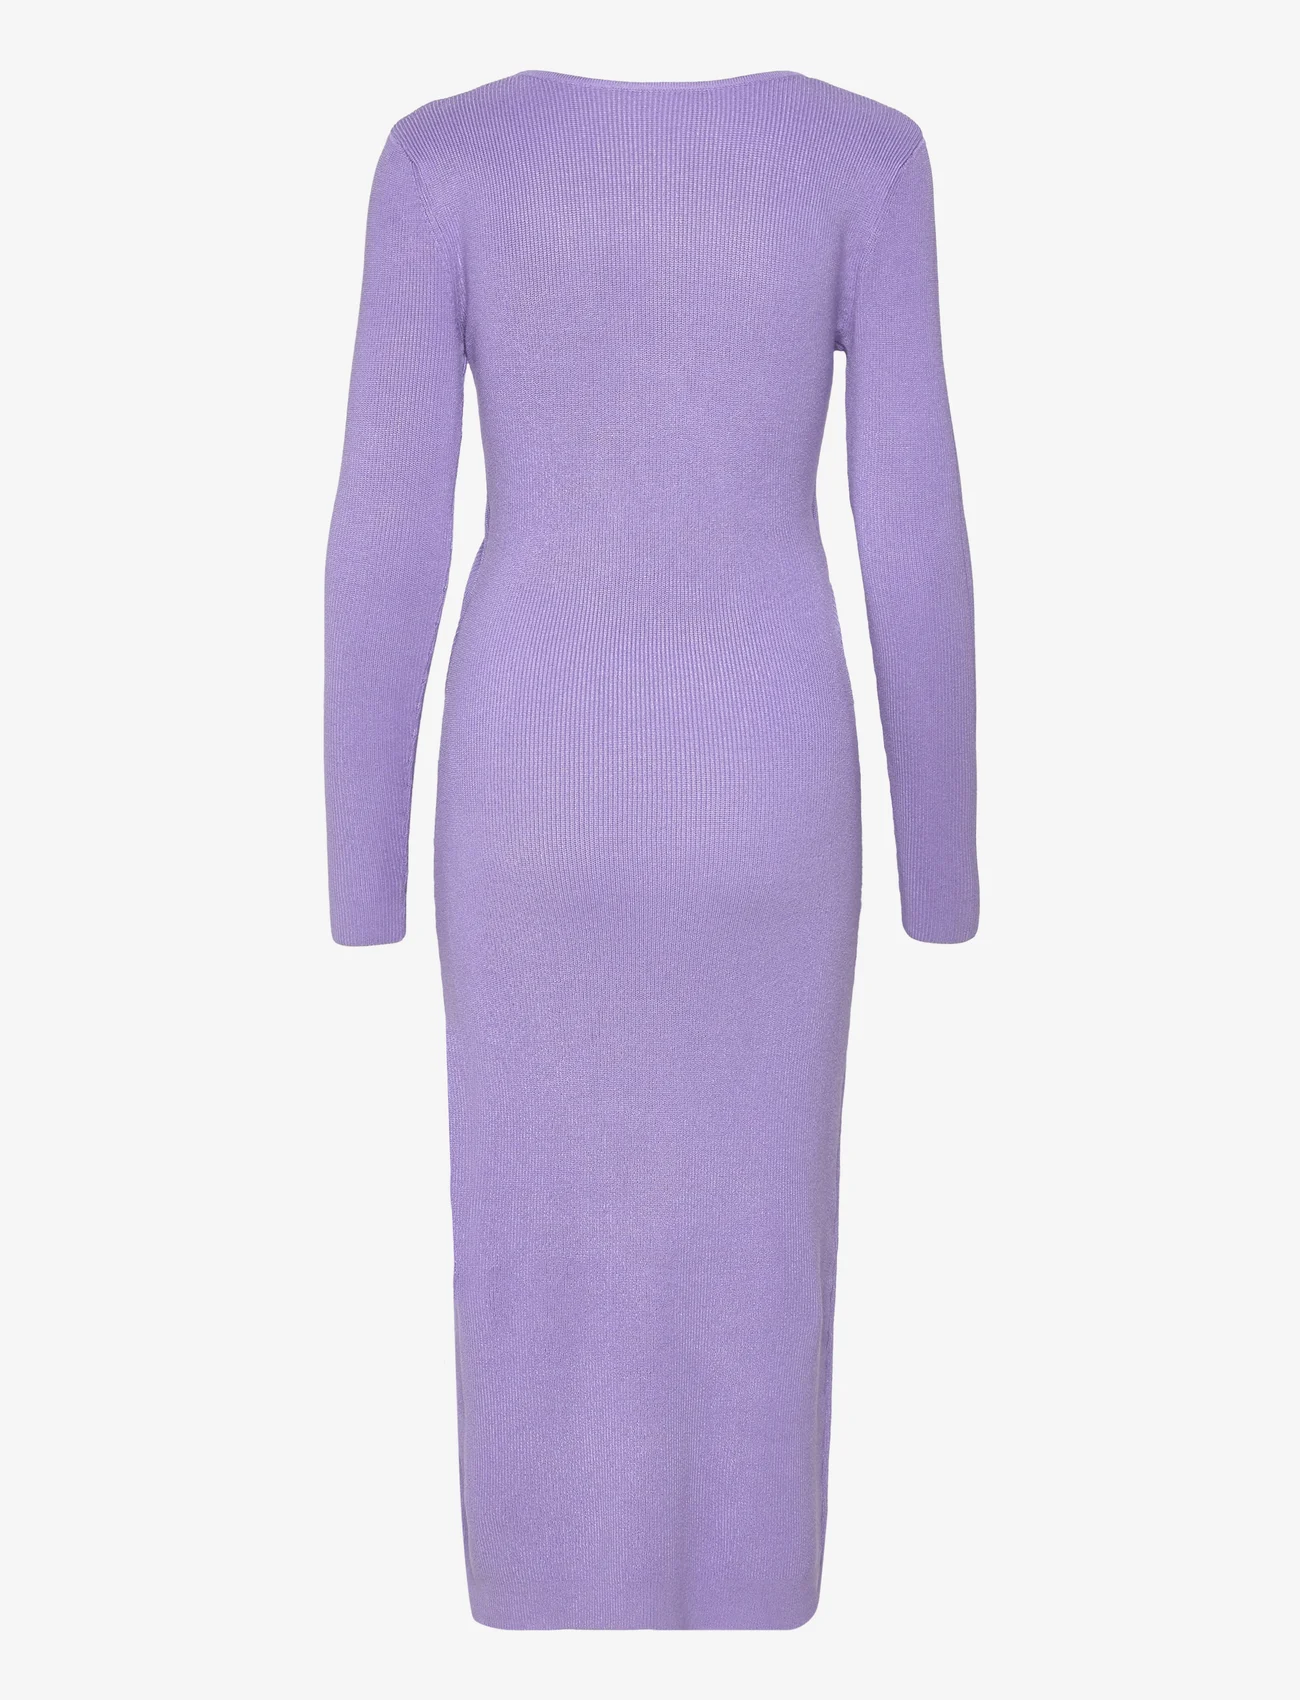 bzr - Lela Jenner dress - tettsittende kjoler - lavender - 1